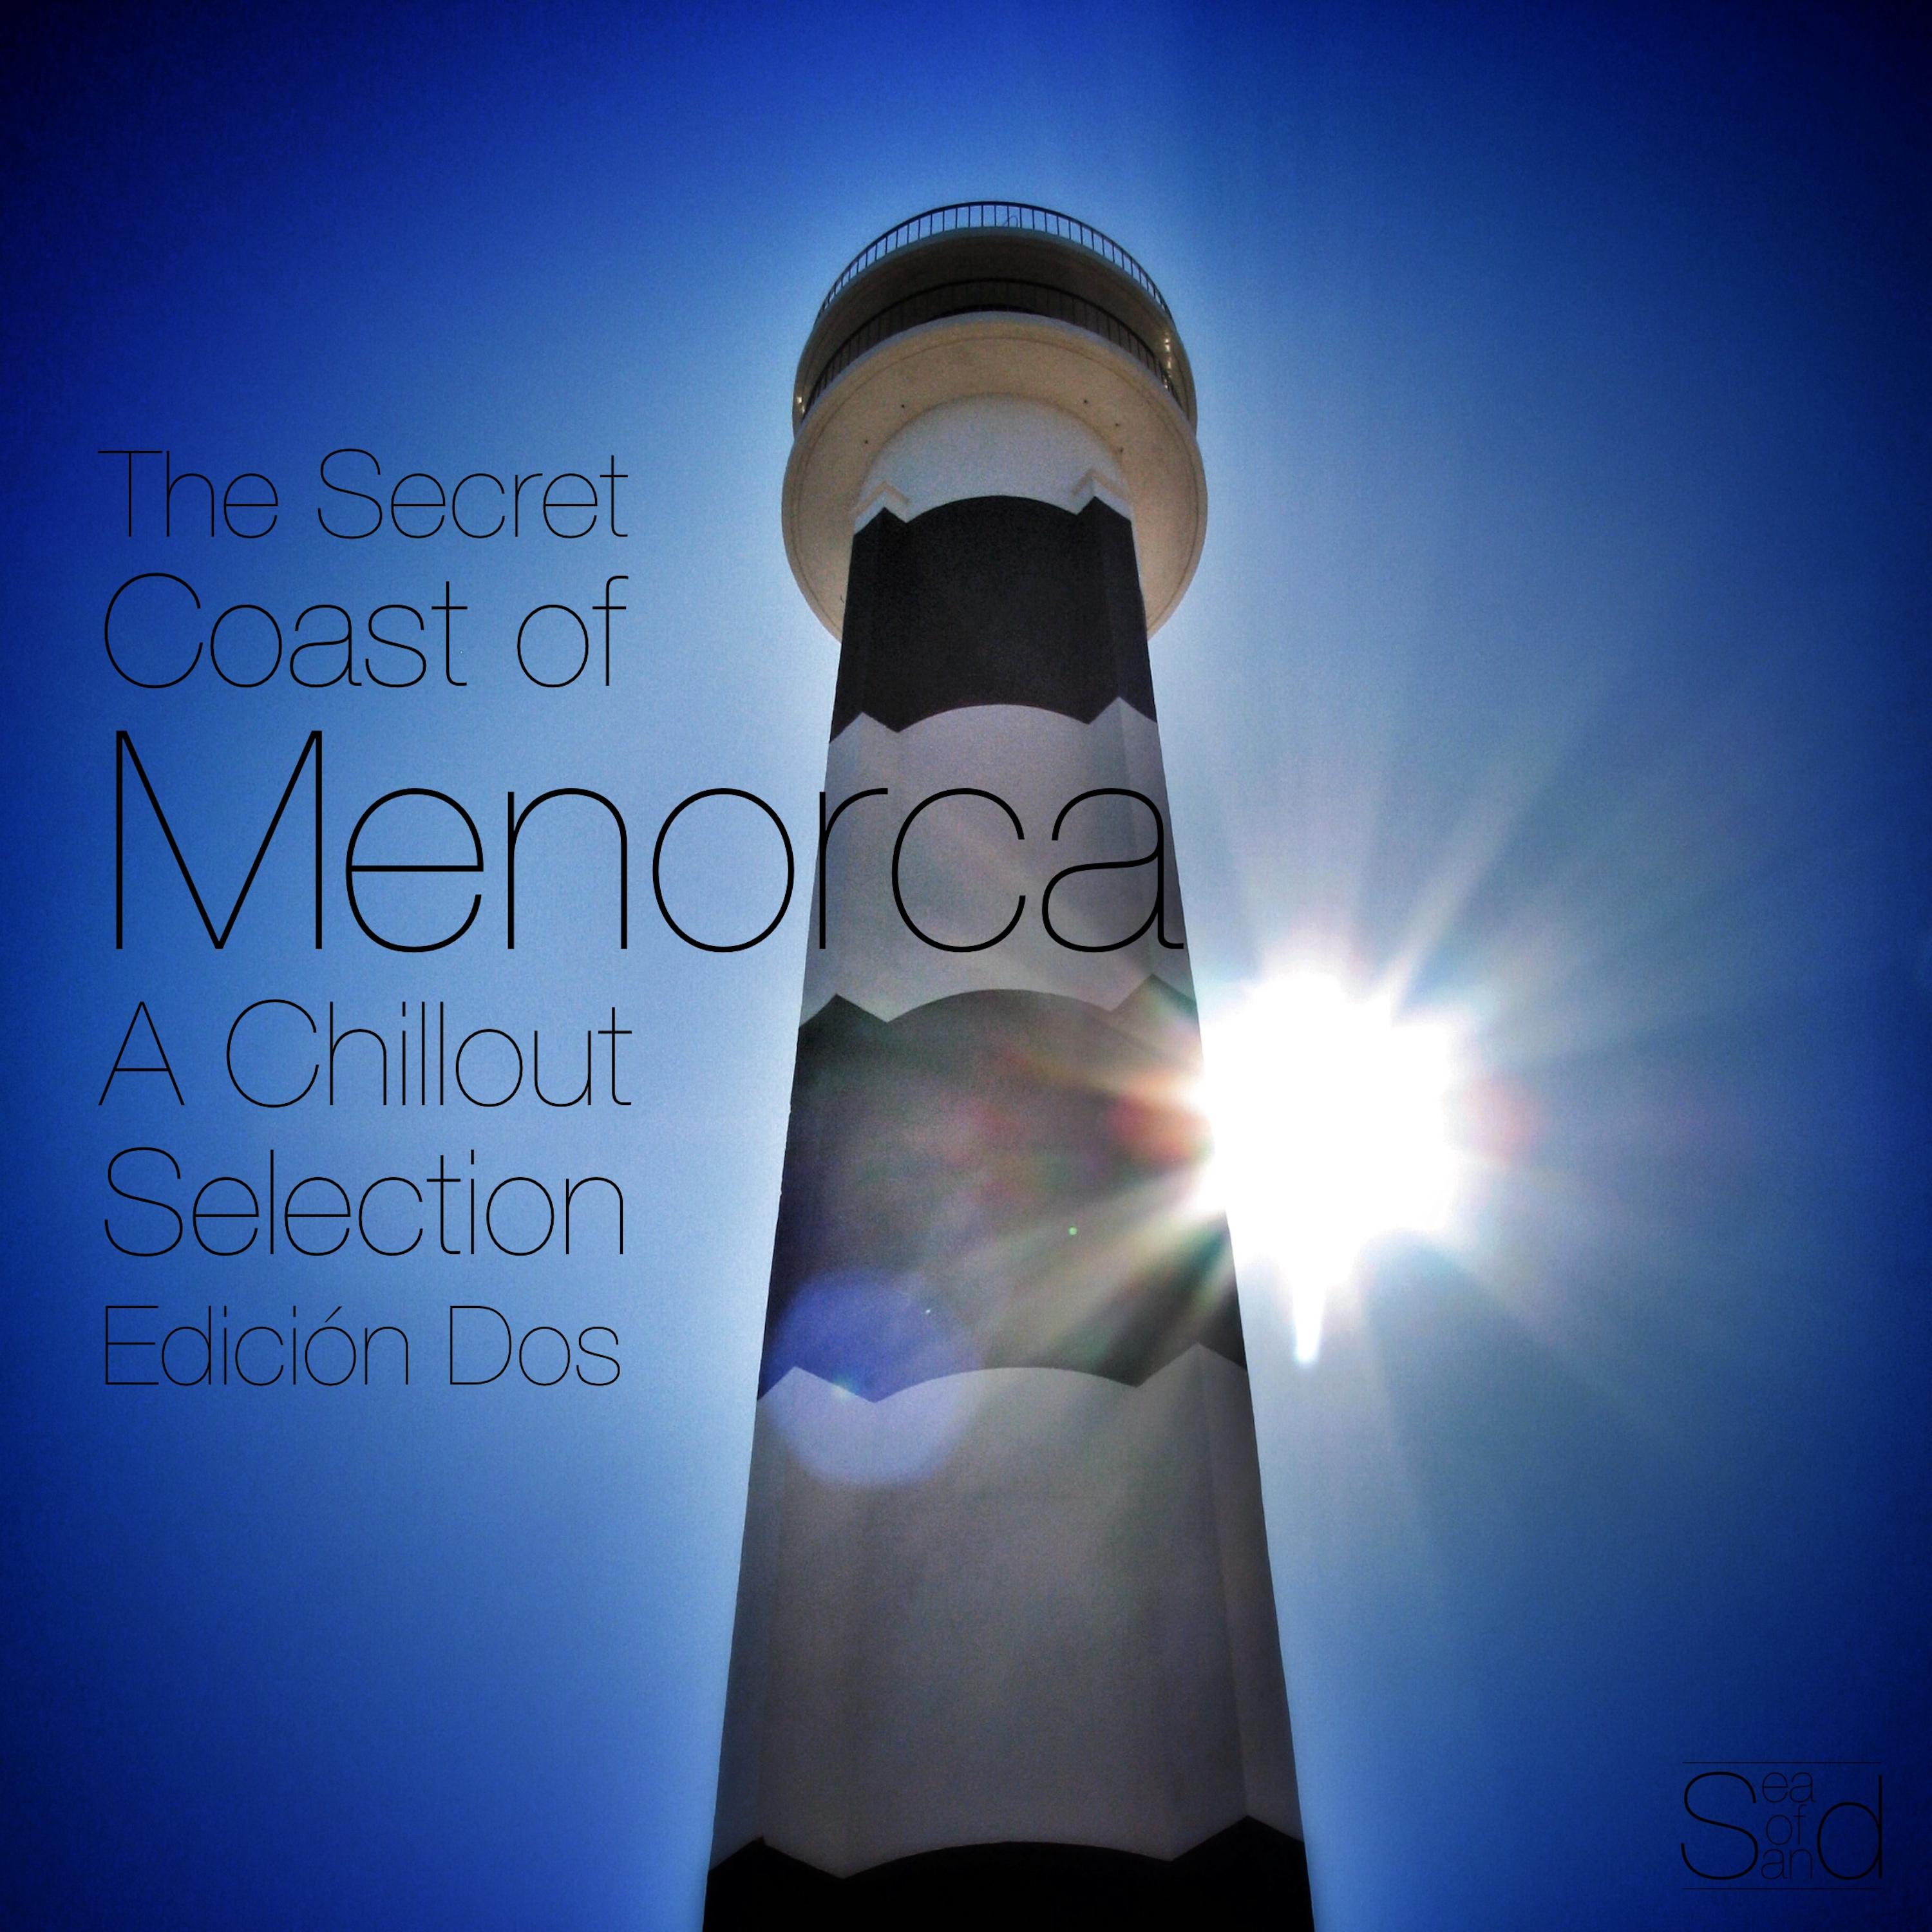 The Secret Coast of Menorca - A Chillout Selection Edición Dos